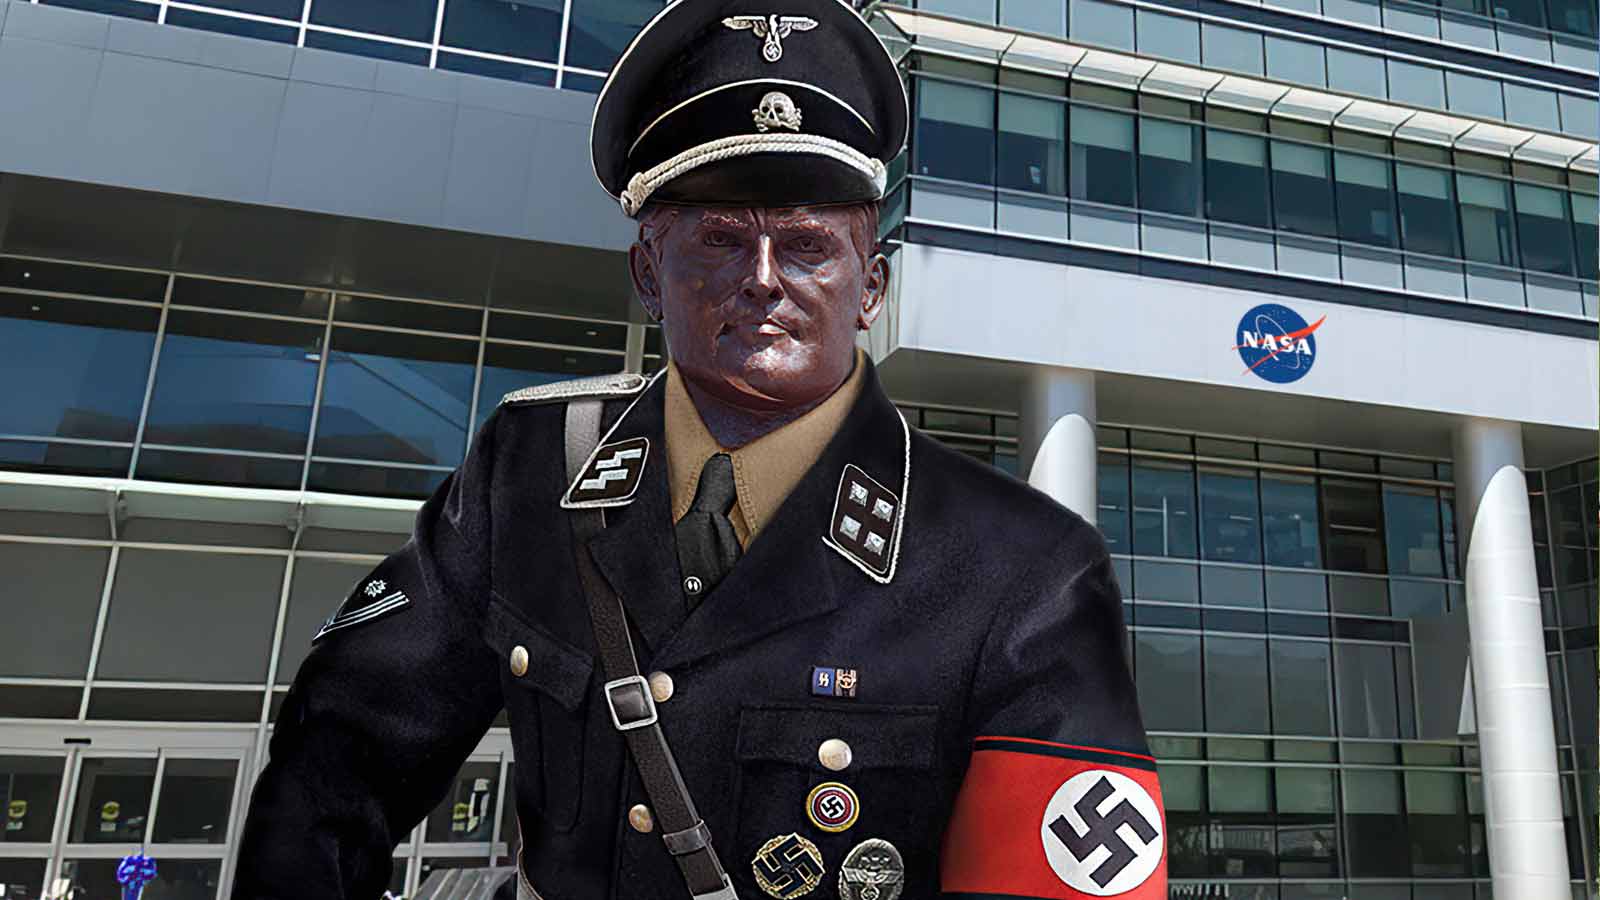 The statue of Wernher von Braun, dressed as a Nazi at Nasa